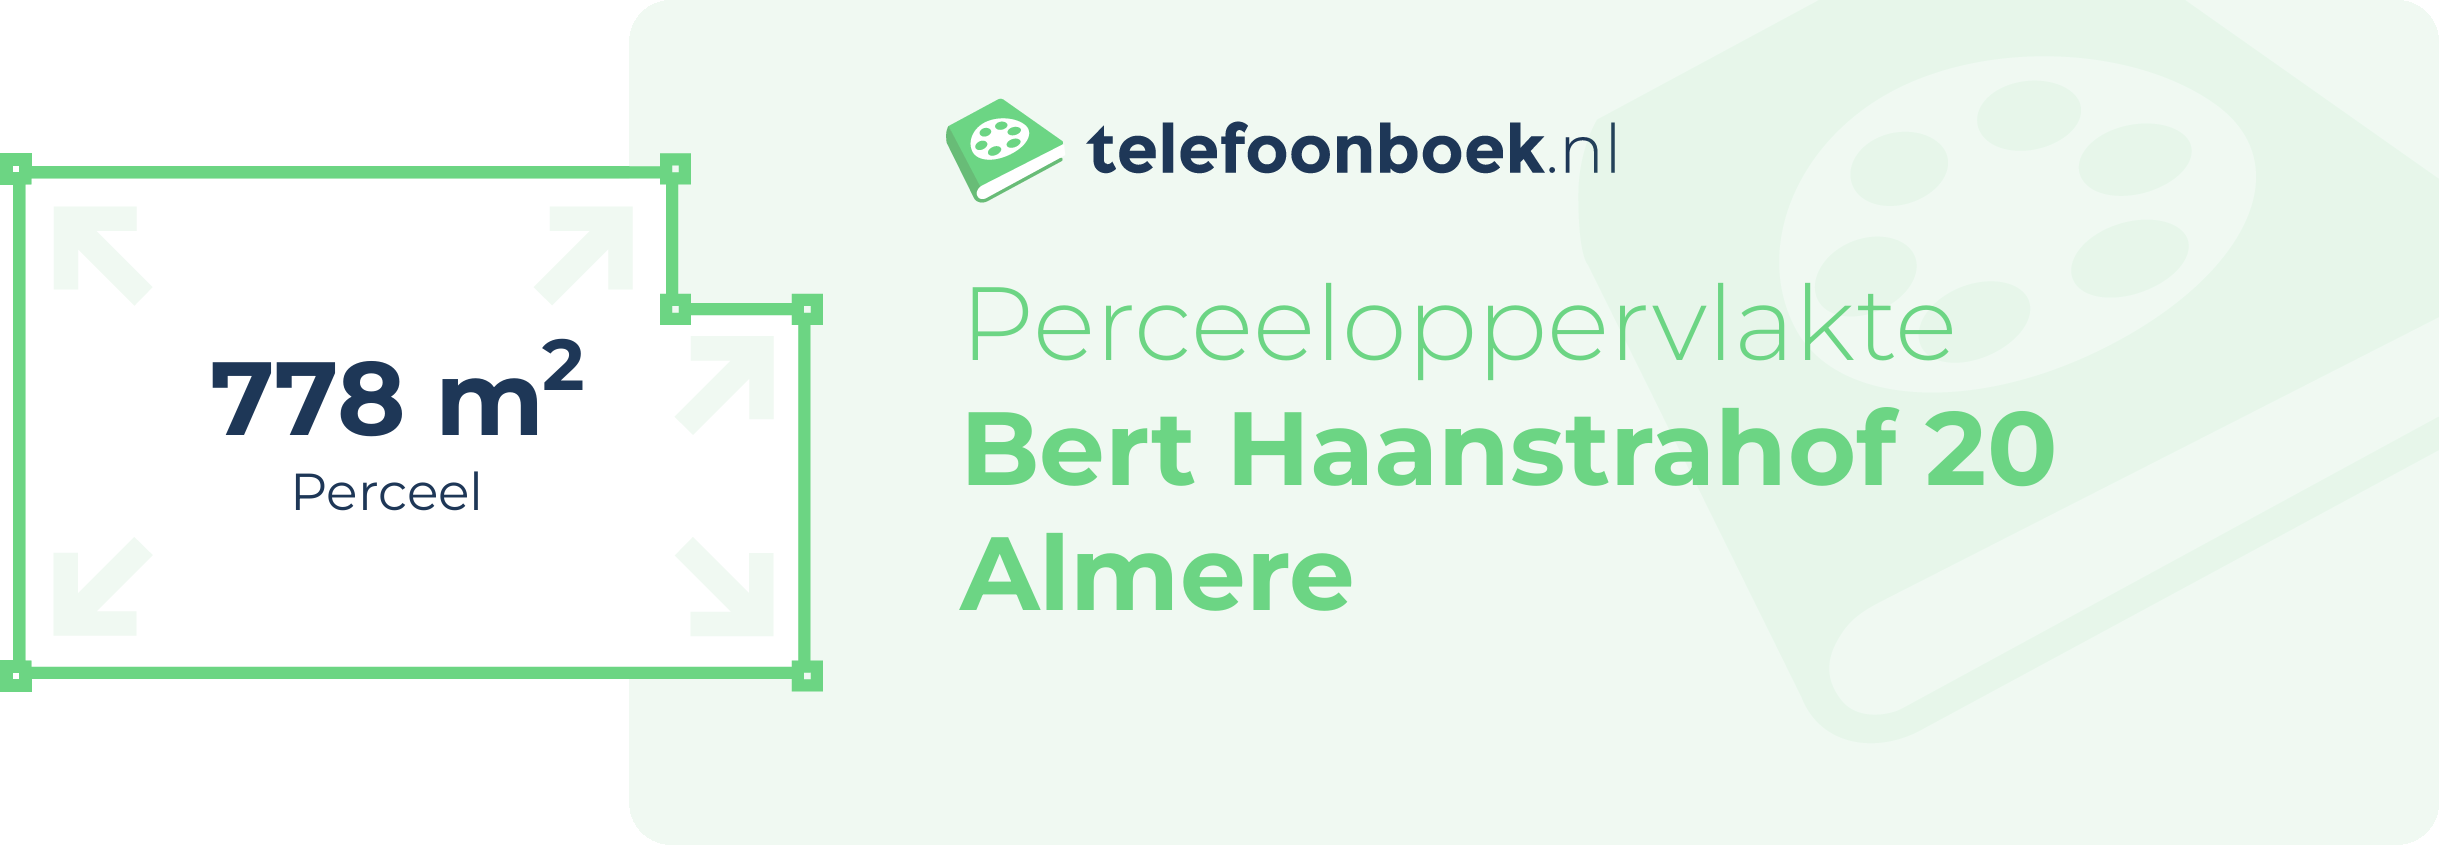 Perceeloppervlakte Bert Haanstrahof 20 Almere